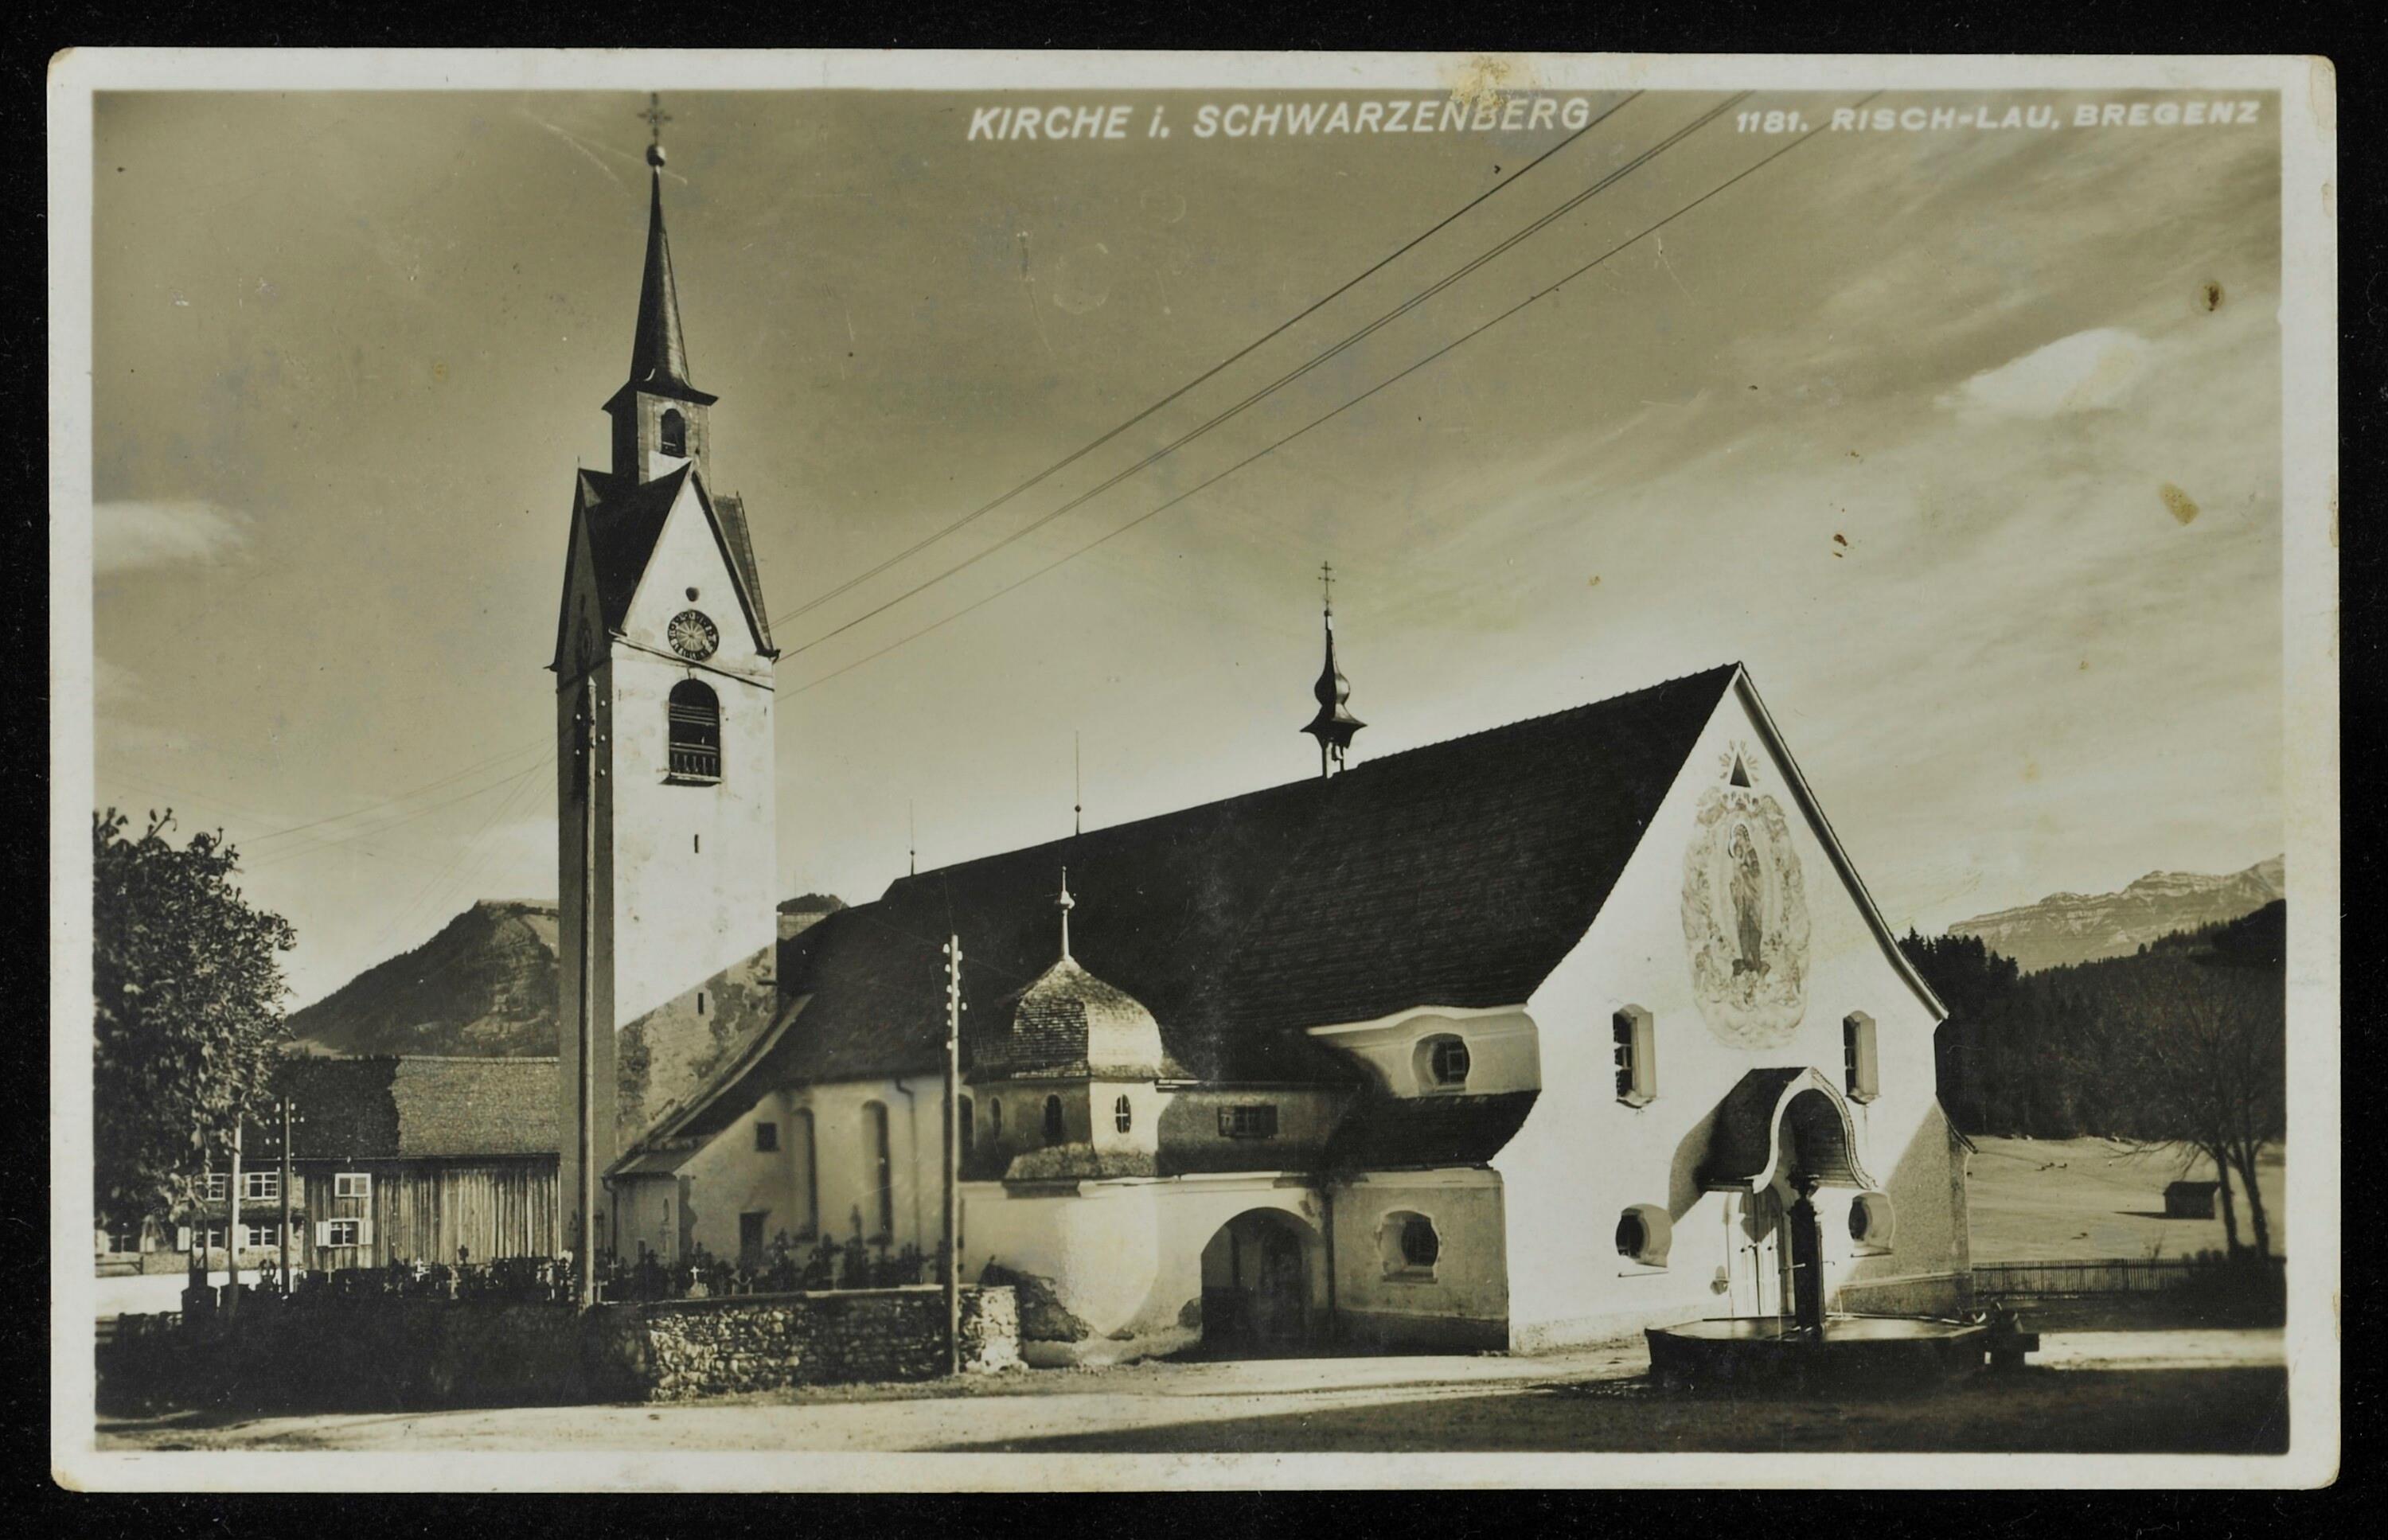 Kirche i. Schwarzenberg></div>


    <hr>
    <div class=